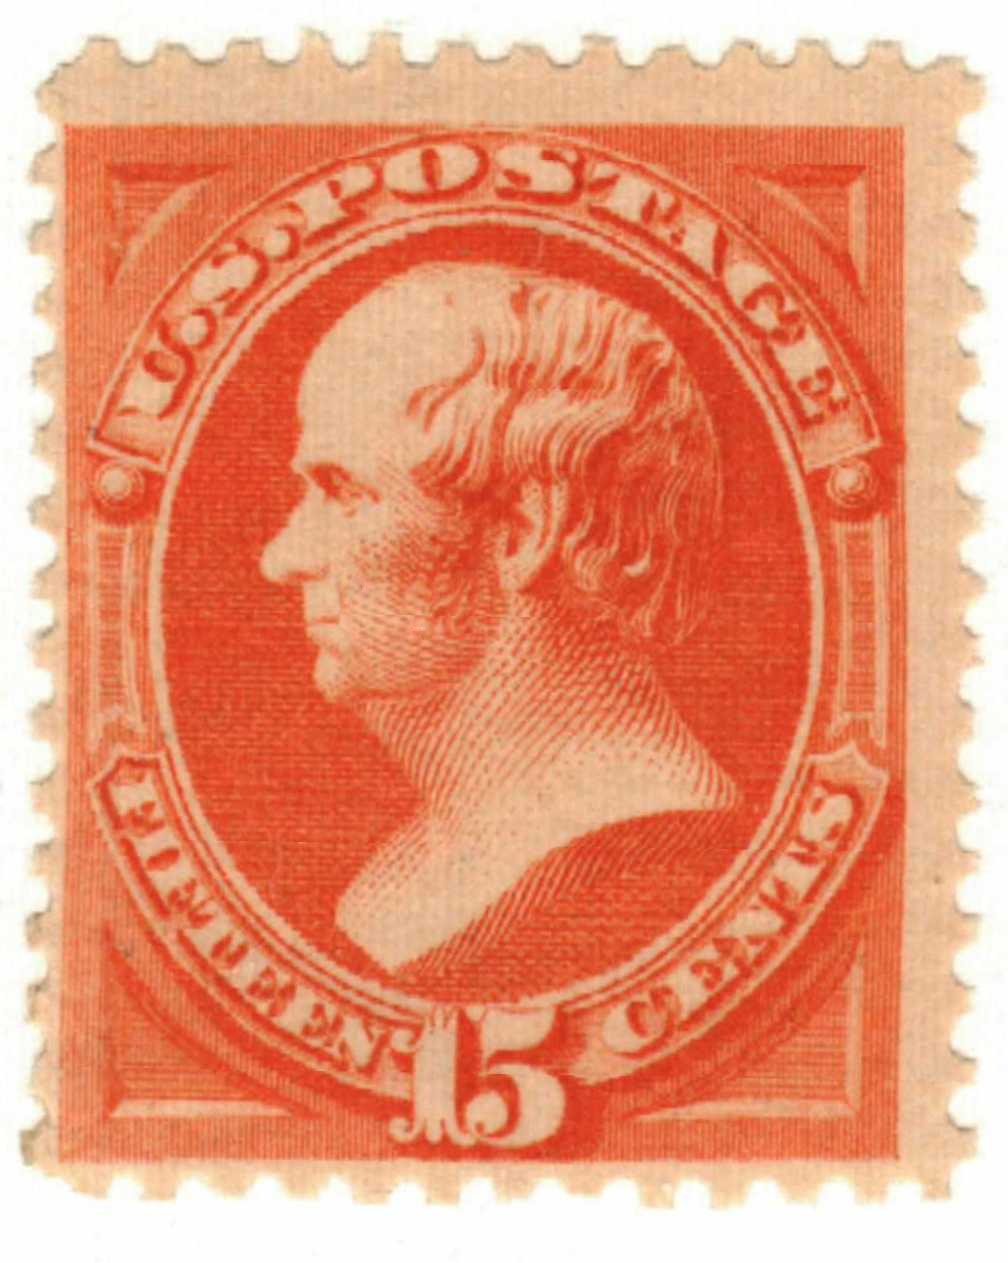 1879 Webster stamp